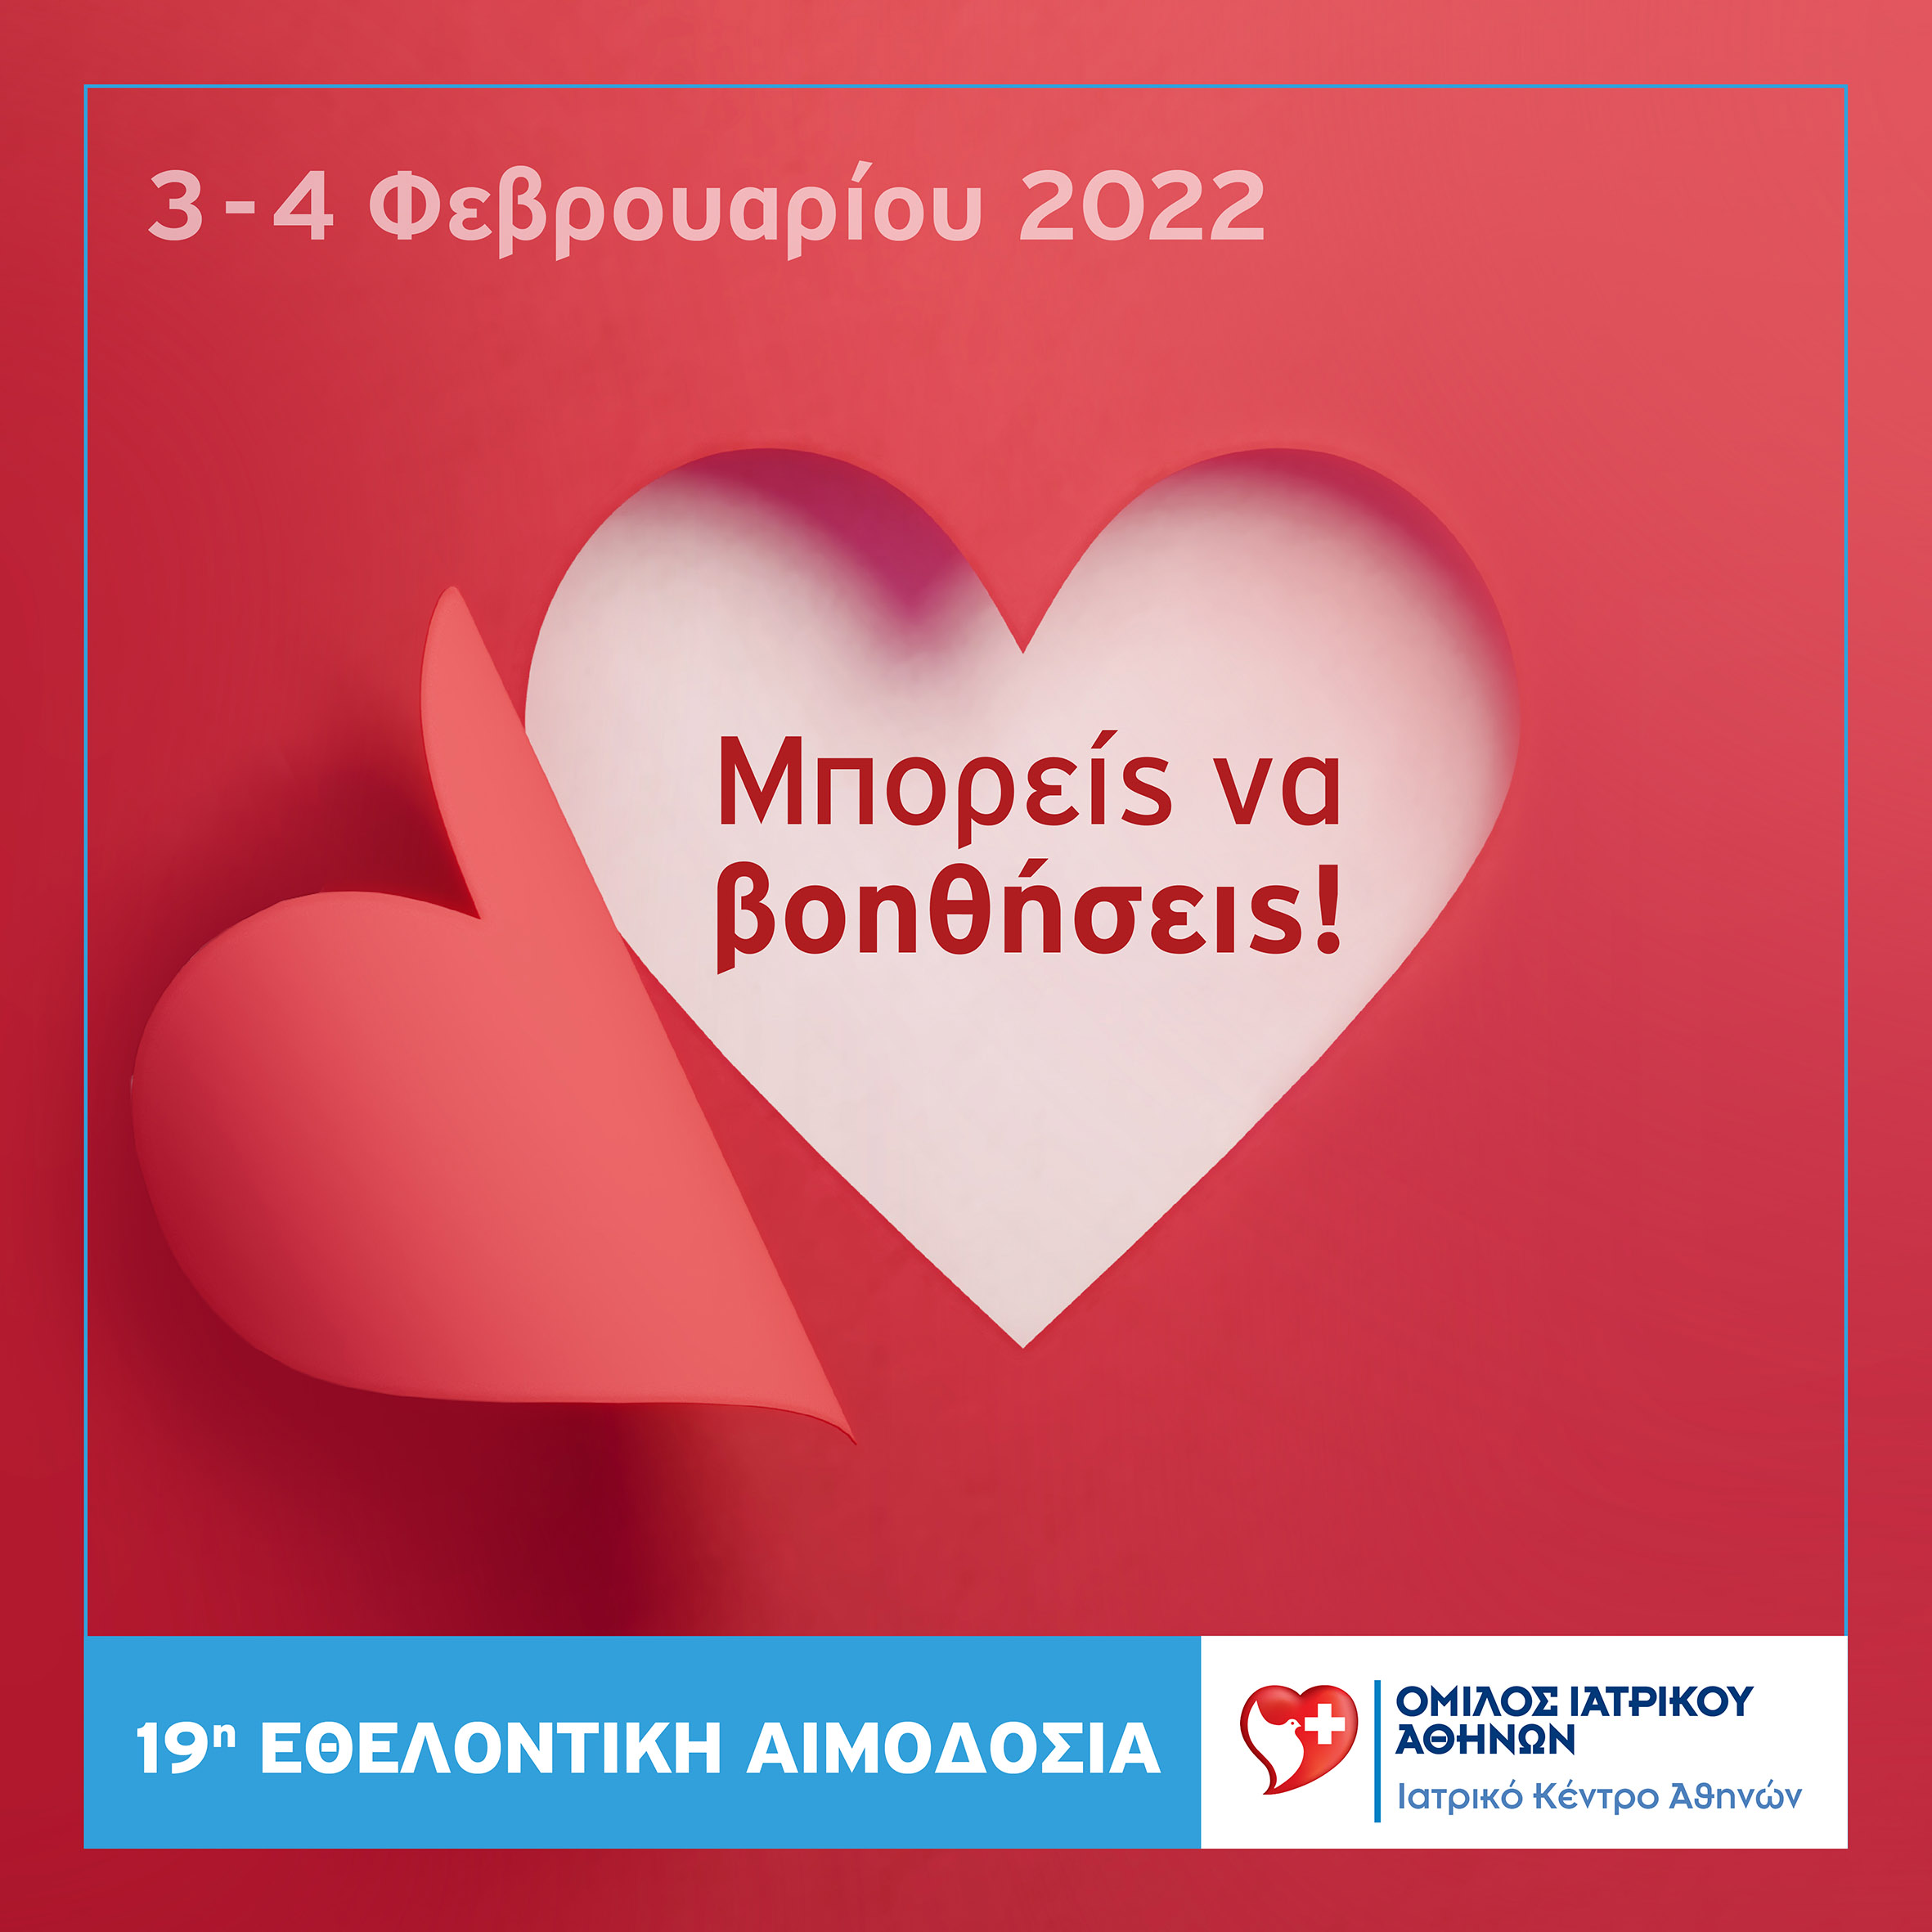 Ιατρικό Κέντρο Αθηνών: 19η εθελοντική αιμοδοσία εργαζομένων